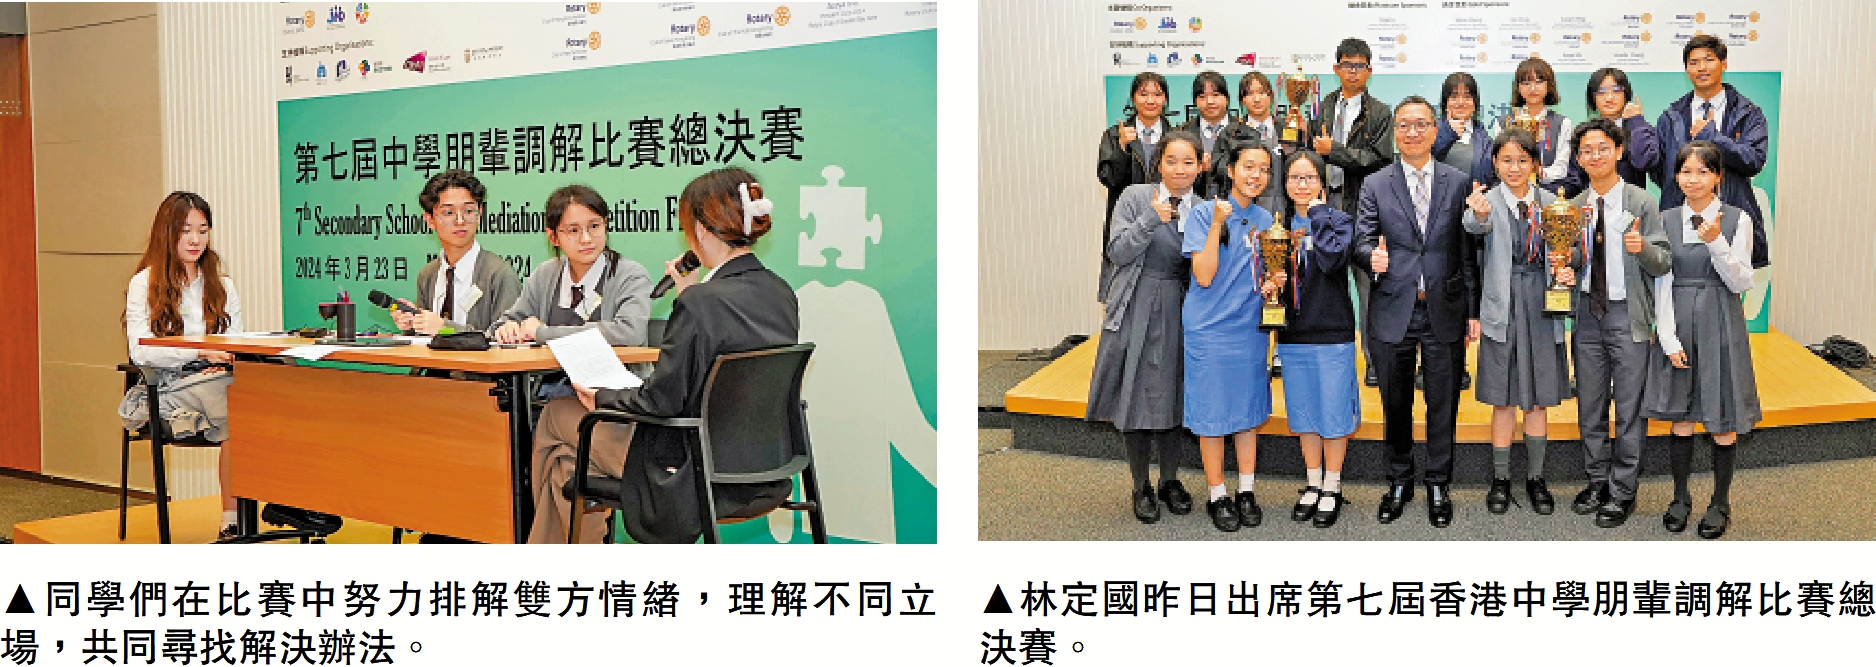 　　左圖：同學們在比賽中努力排解雙方情緒，理解不同立場，共同尋找解決辦法。右圖：林定國昨日出席第七屆香港中學朋輩調解比賽總決賽。